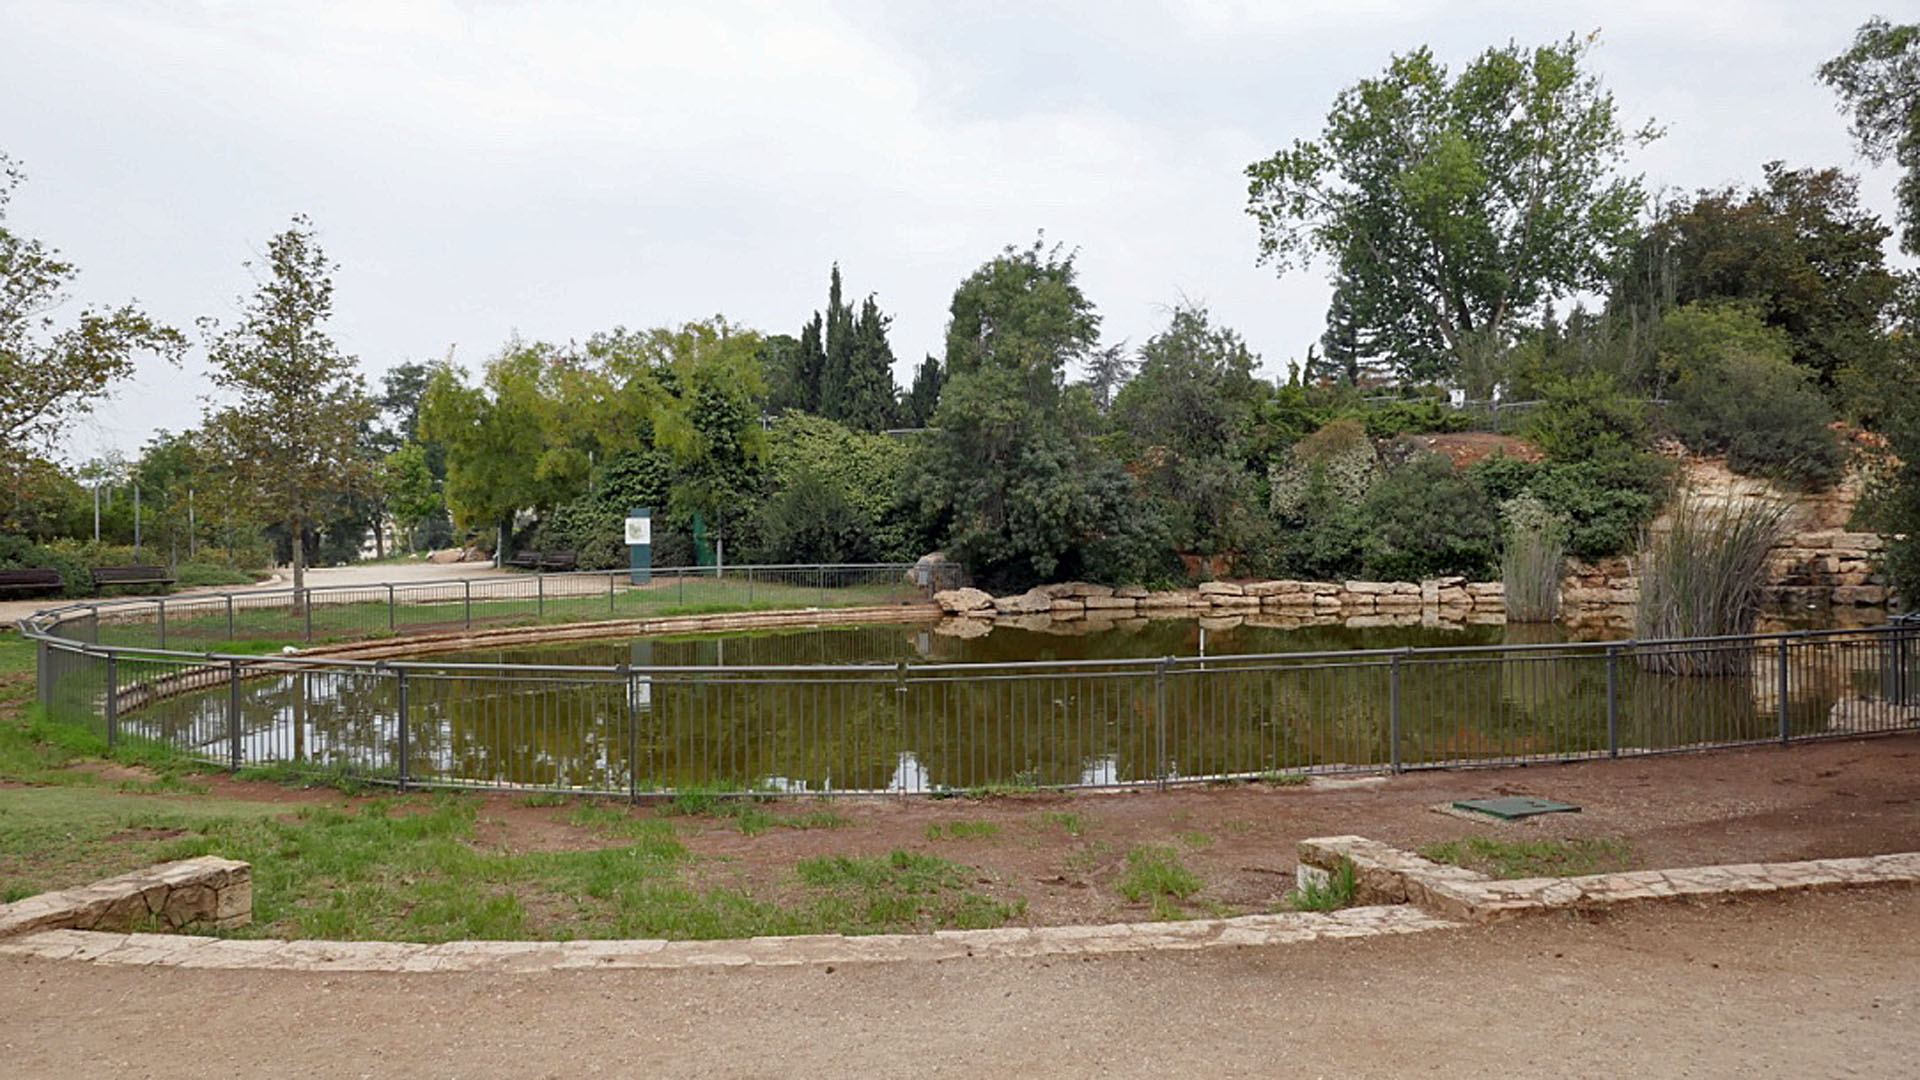 Am Neujahrsfest besuchen viele Jerusalemer Juden diesen Teich, um symbolisch ihre Sünden abzuladen